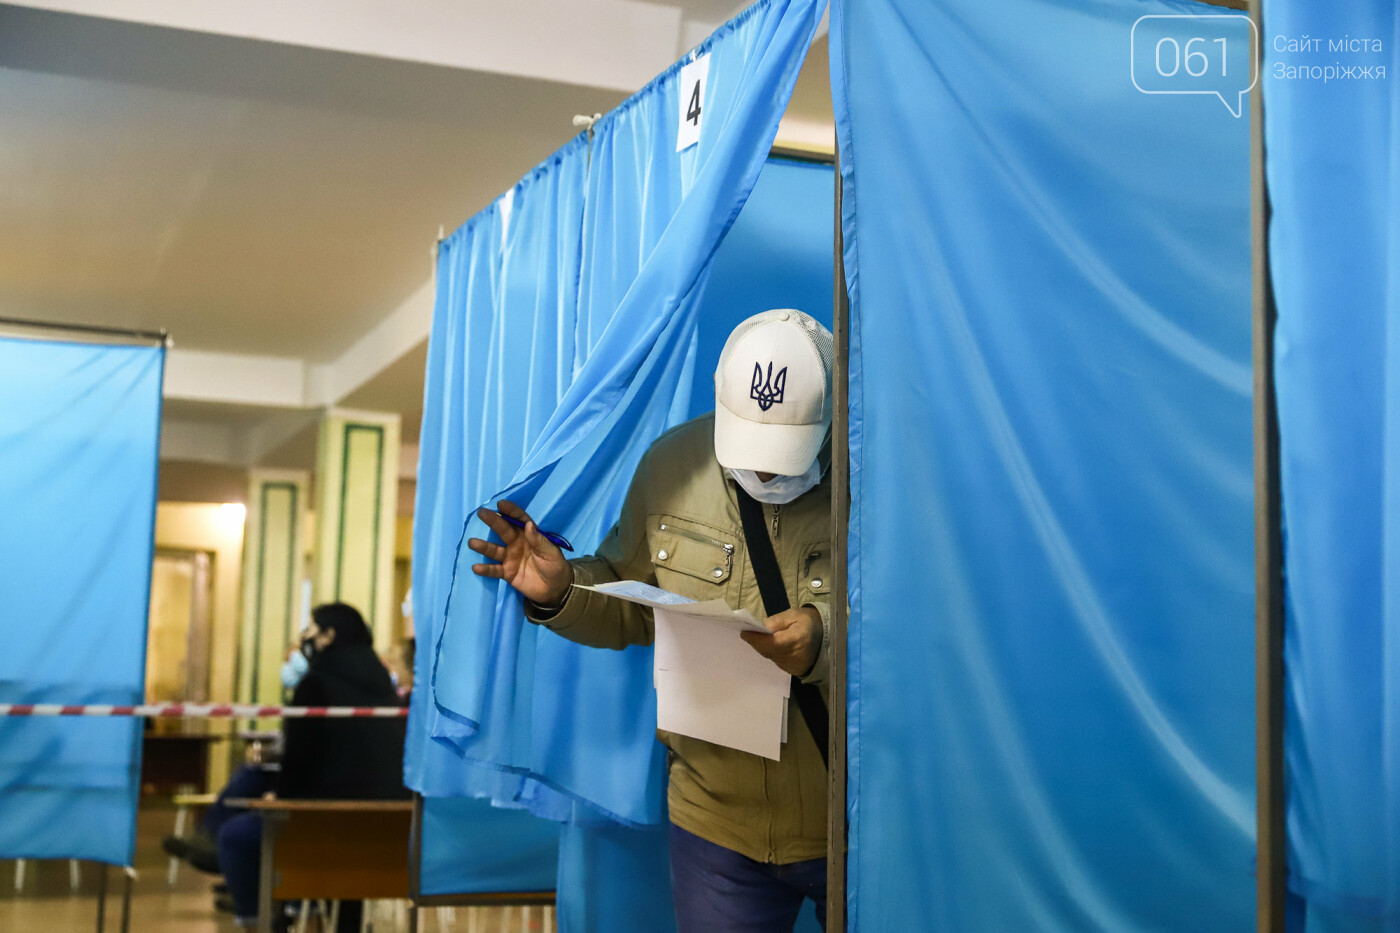 Выборы в условиях карантина: как запорожцы выбирают мэра и депутатов, - ФОТОРЕПОРТАЖ, фото-37